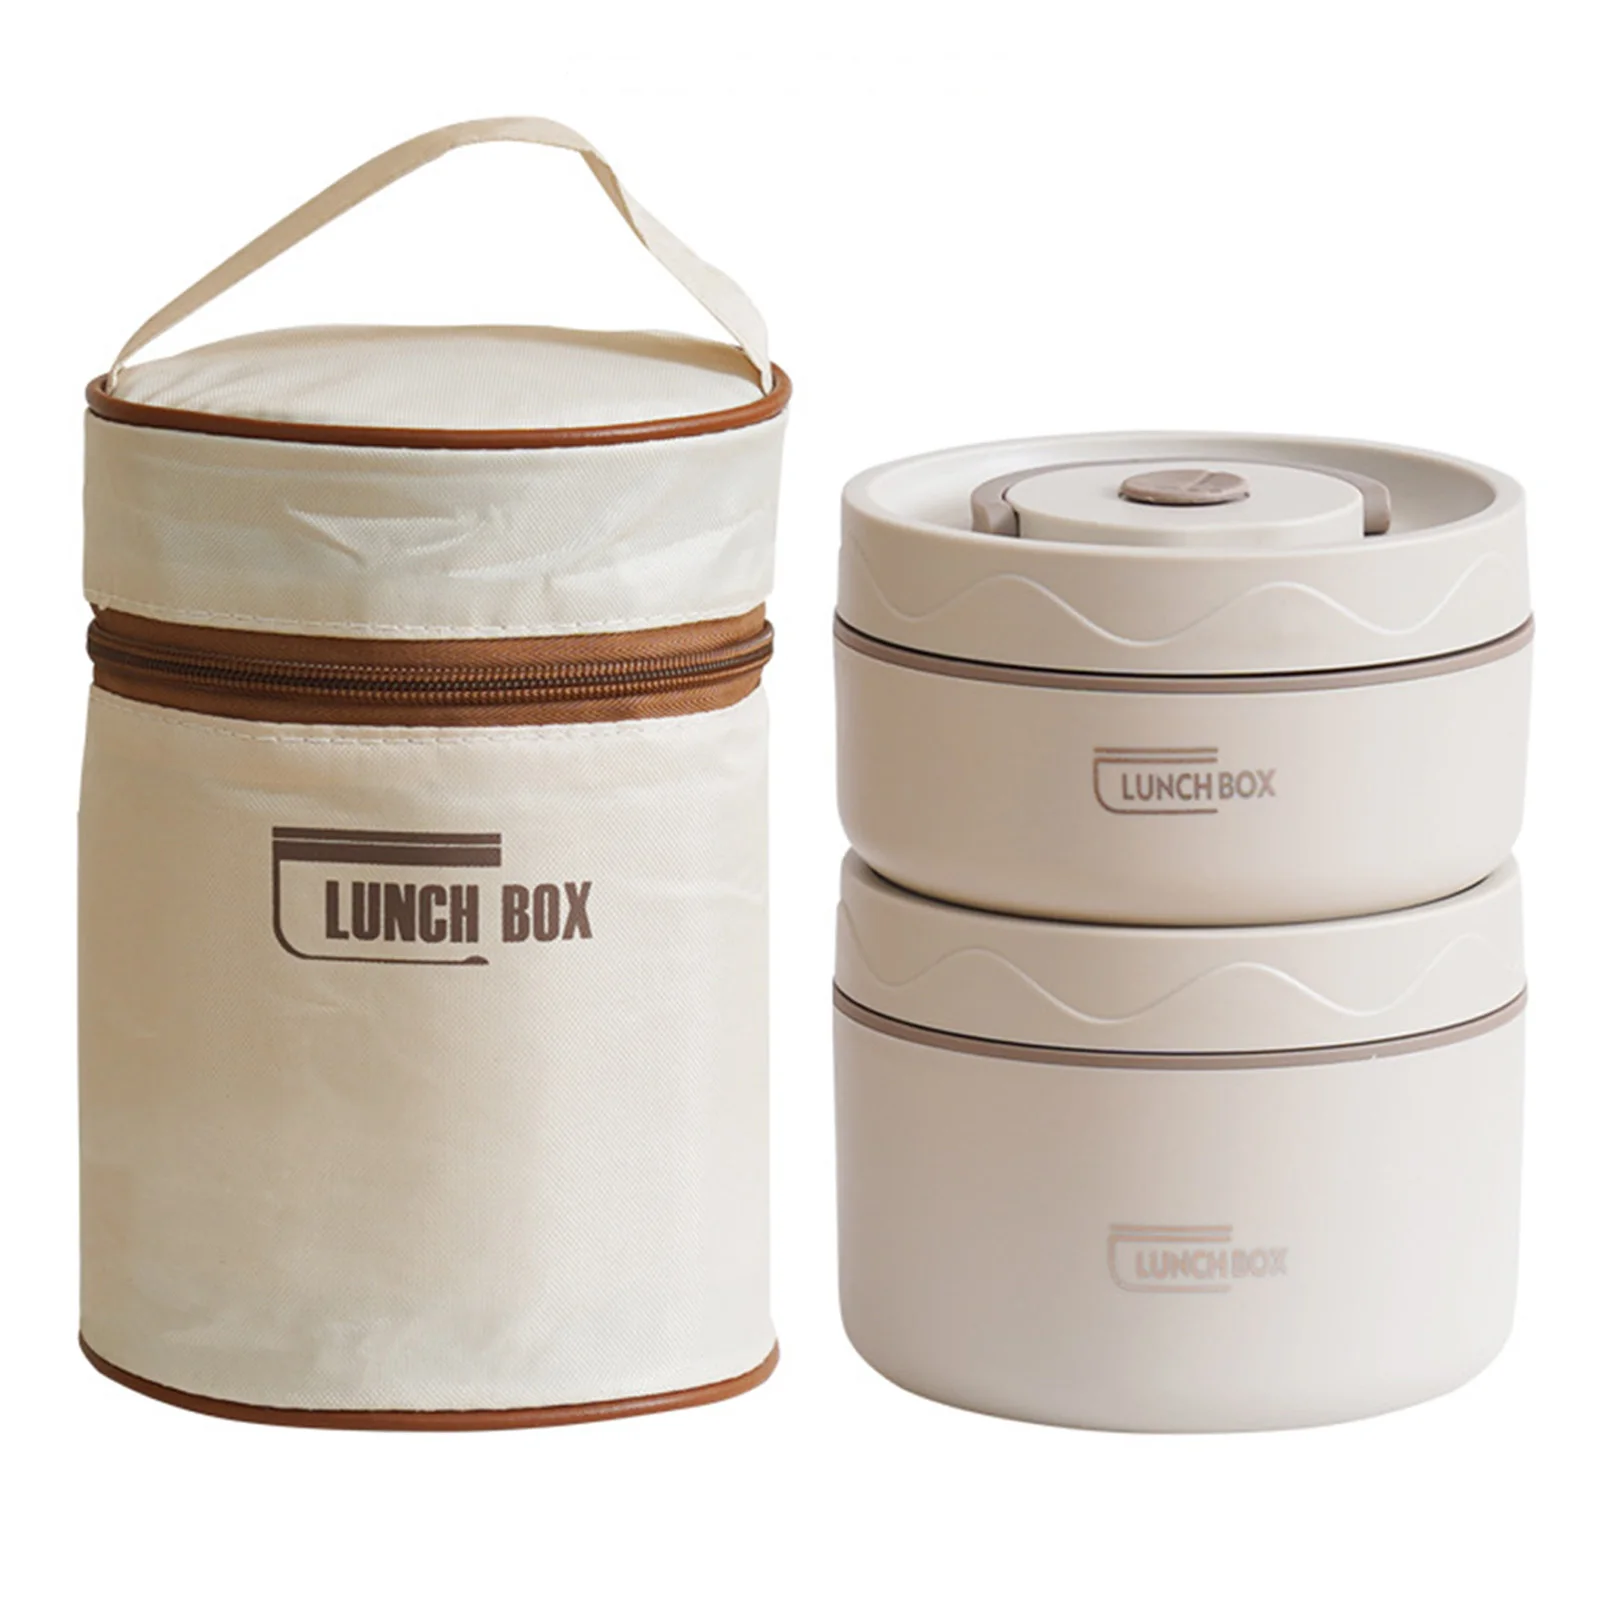 

Круглый Ланч-бокс большой емкости, контейнер для пищевых продуктов Bento с сумкой для хранения для Outdooe, для пешего туризма, пикника, дома